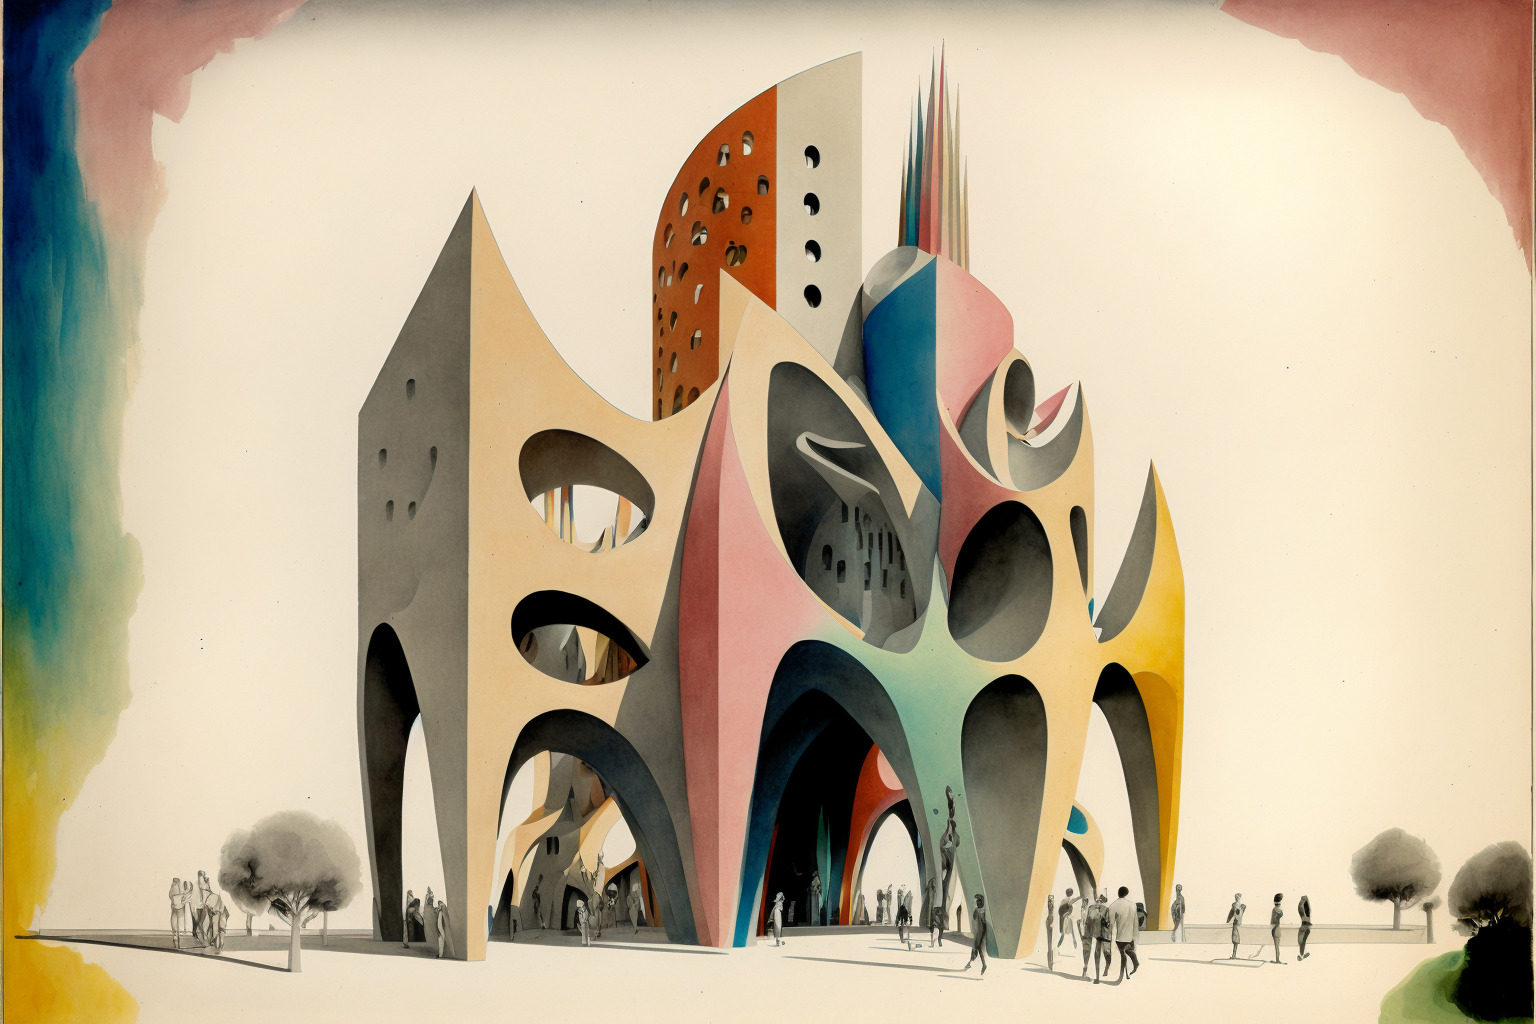 AI generated image of a multi-coloured futuristic building